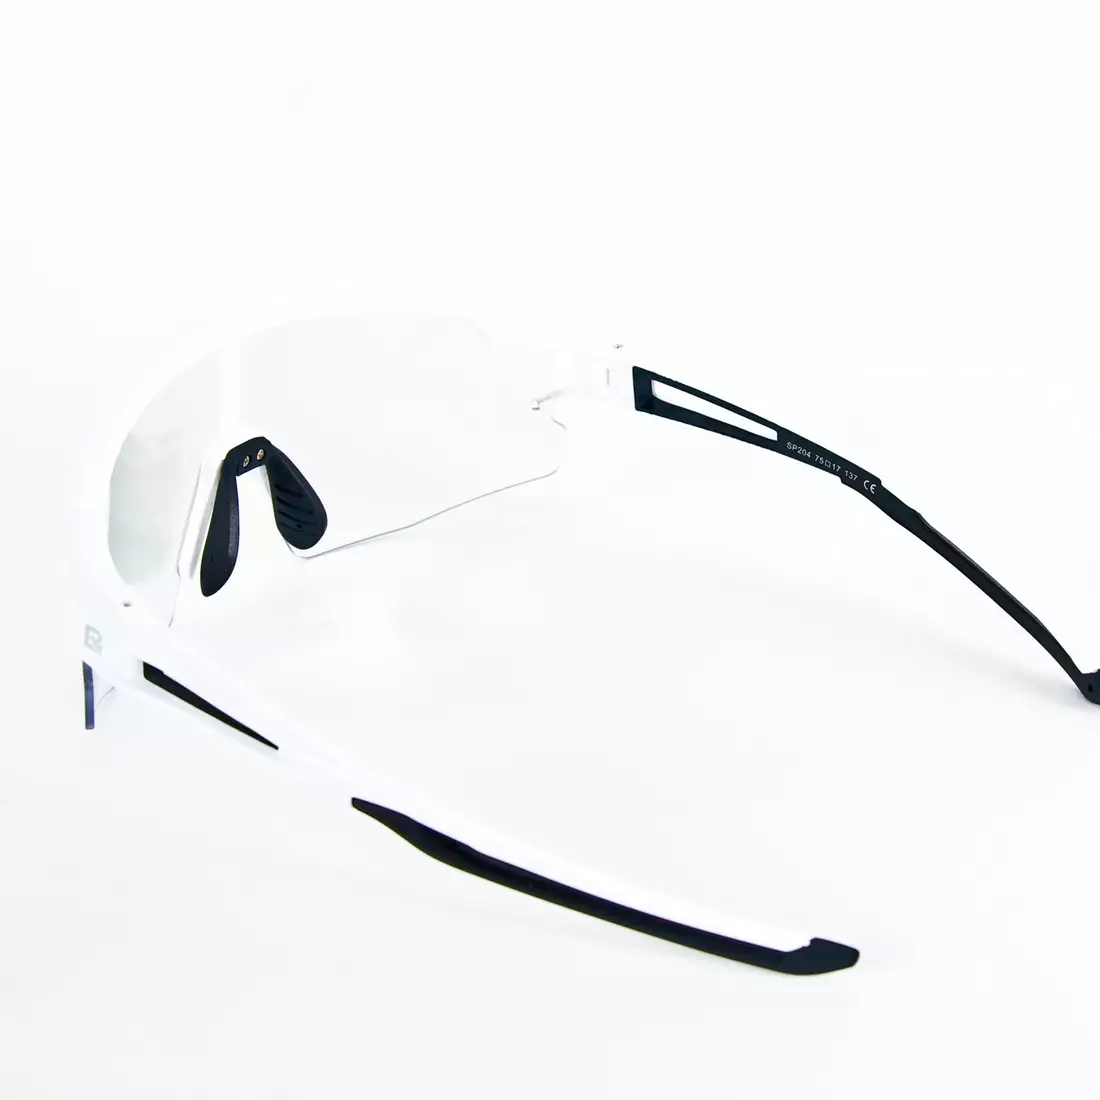 Rockbros 10172 ochelari de ciclism / sport cu fotocrom white